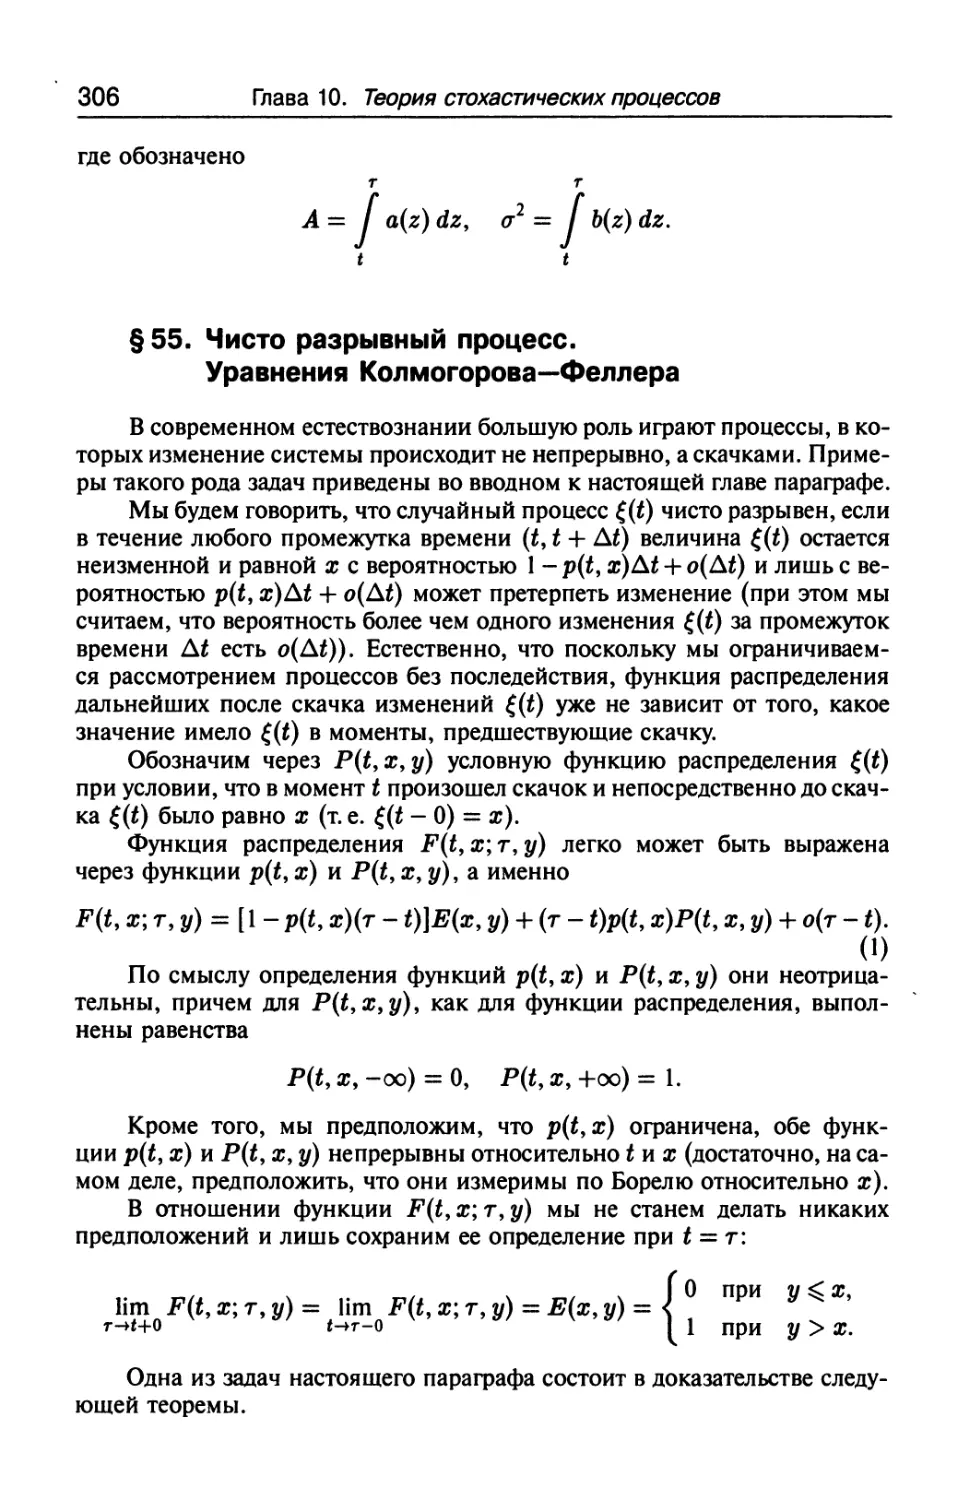 § 55. Чисто разрывный процесс. Уравнения Колмогорова-Феллера